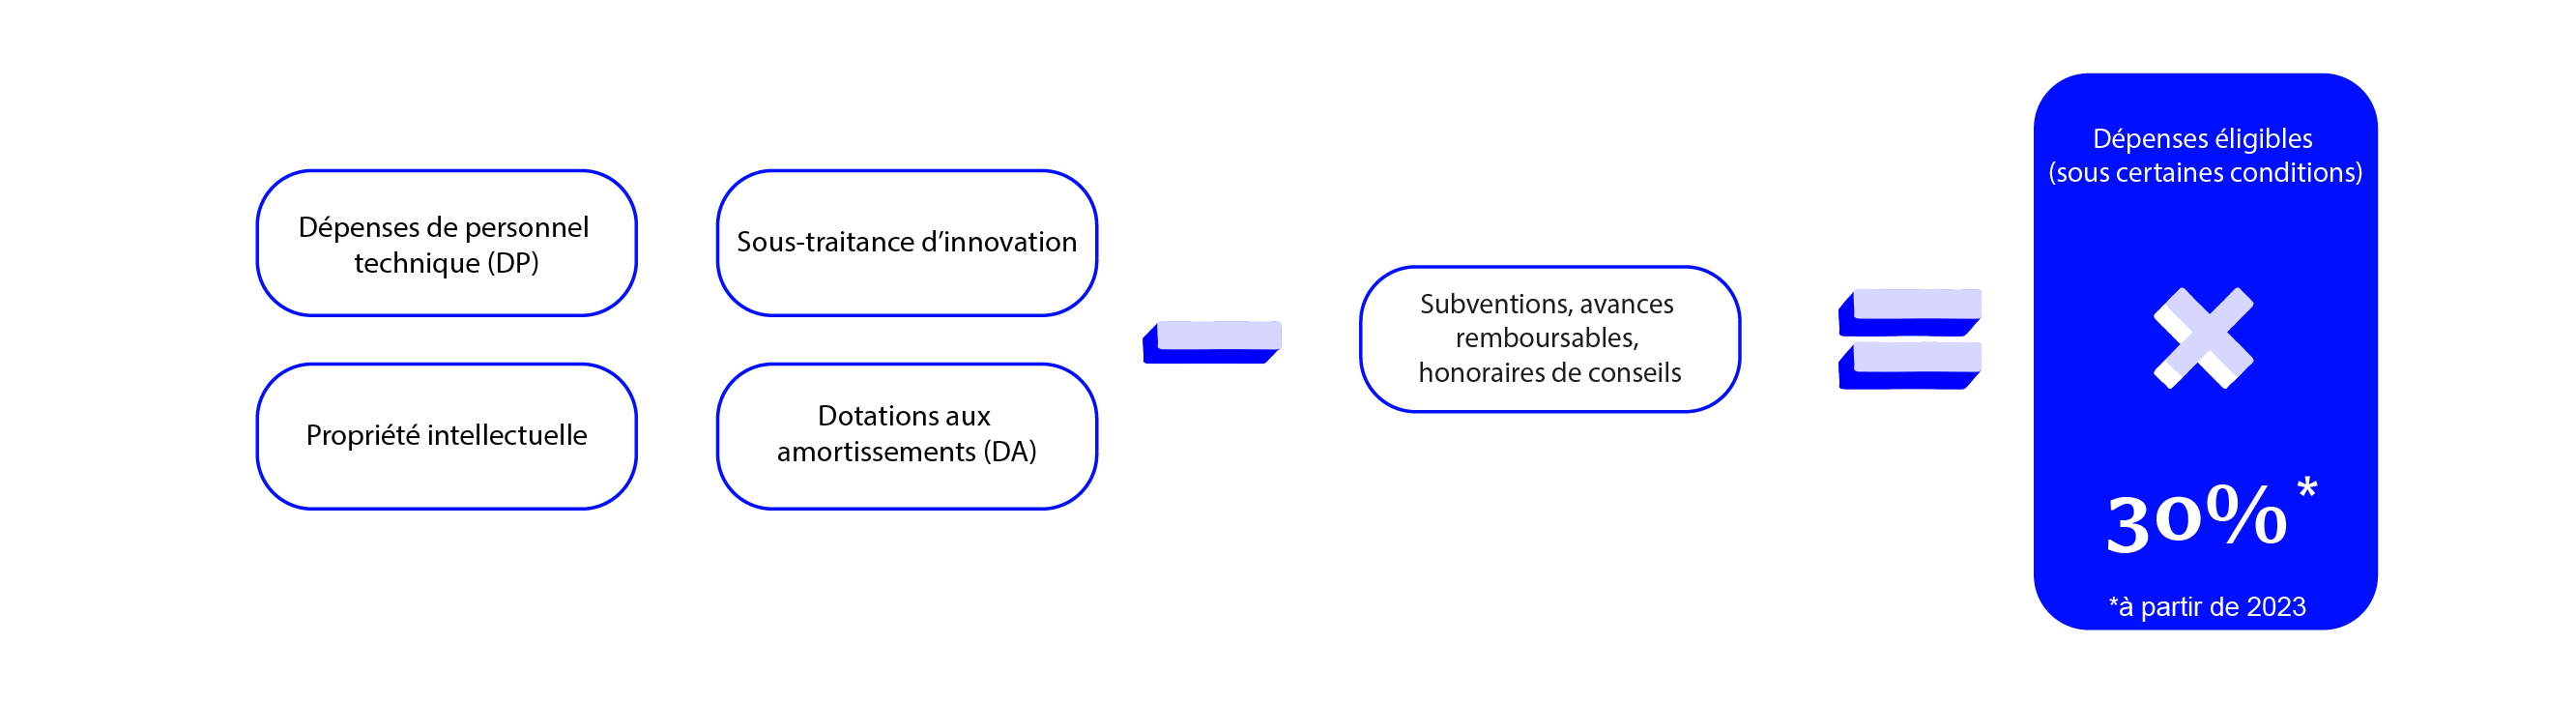 calcul crédit d'impôt innovation 2023